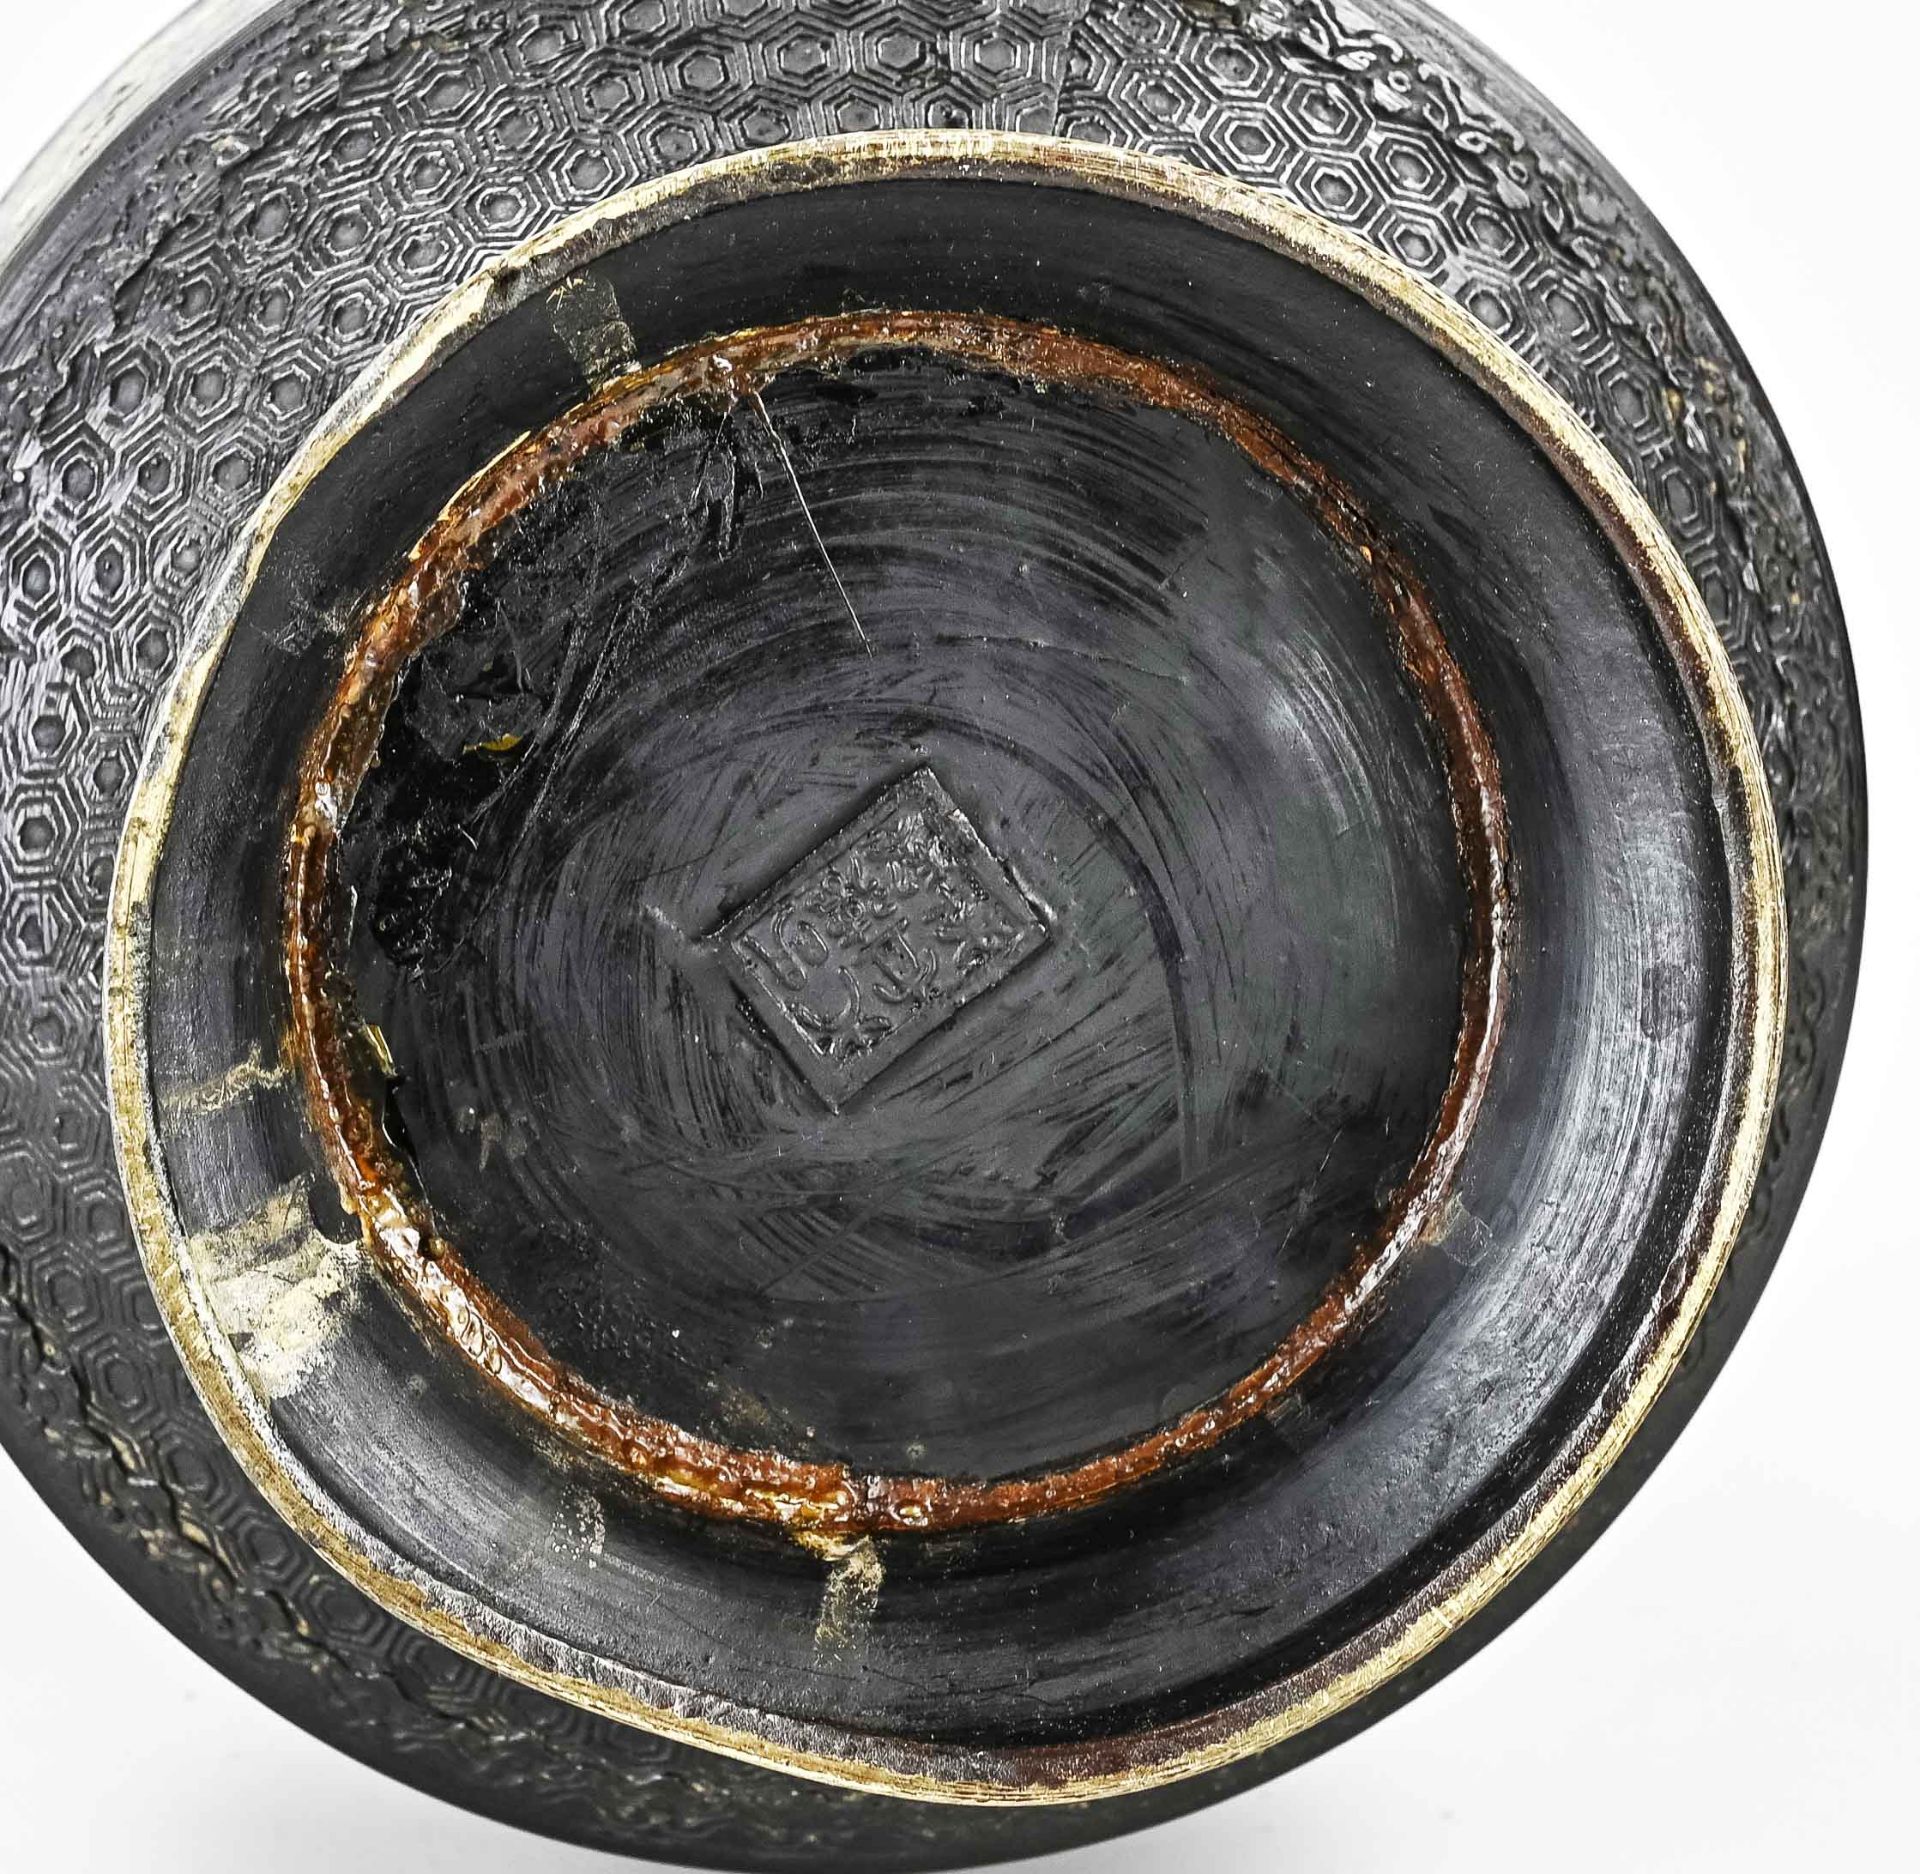 Japanese cloisonne vase, H 36.5 cm. - Image 2 of 2